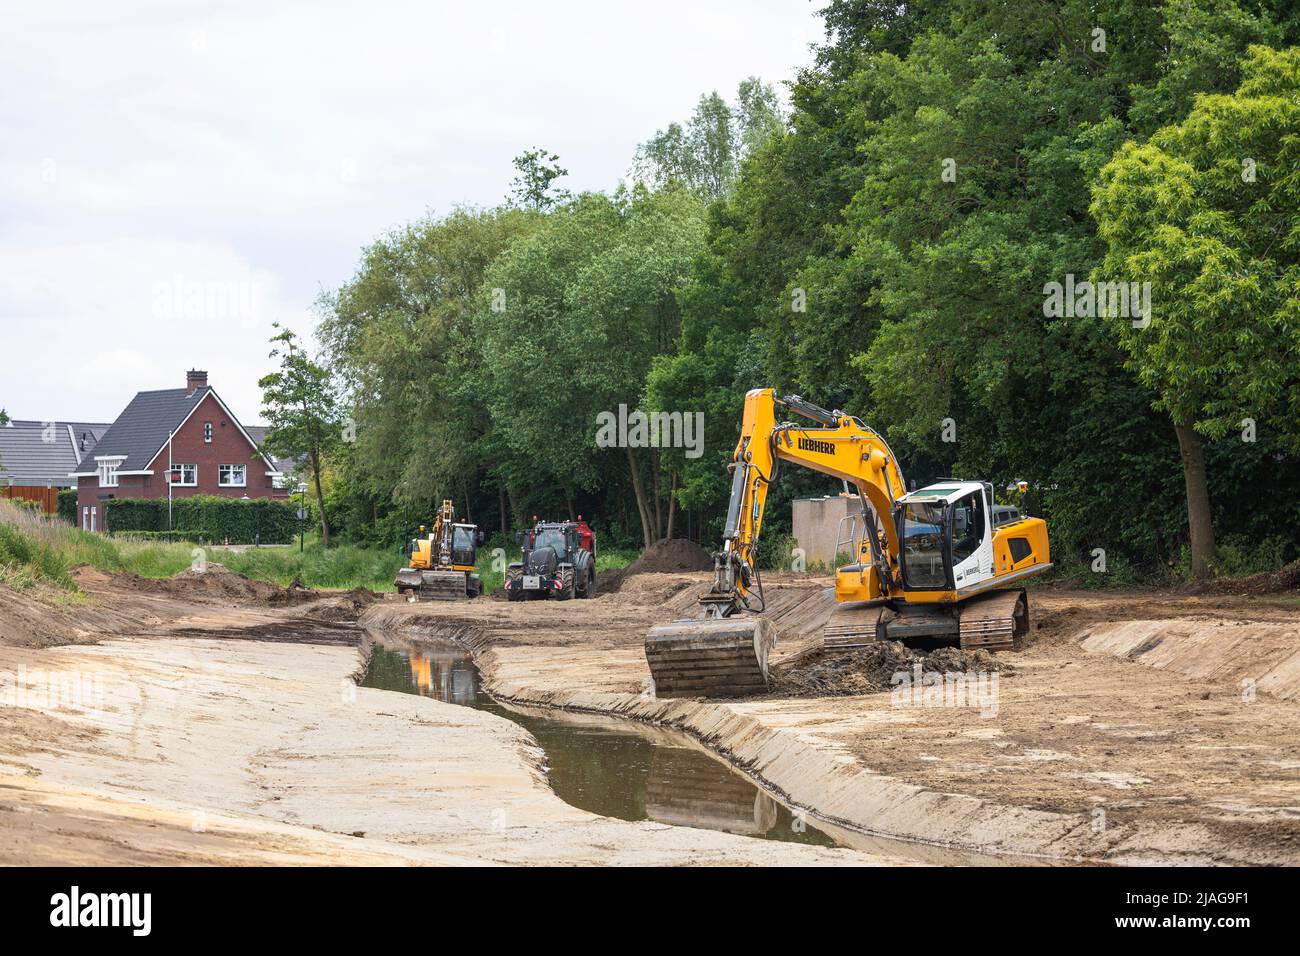 Las excavadoras en funcionamiento que restauran las corrientes de agua canalizadas vuelven a su forma serpenteante en una zona residencial, la gestión del agua en los Países Bajos Foto de stock